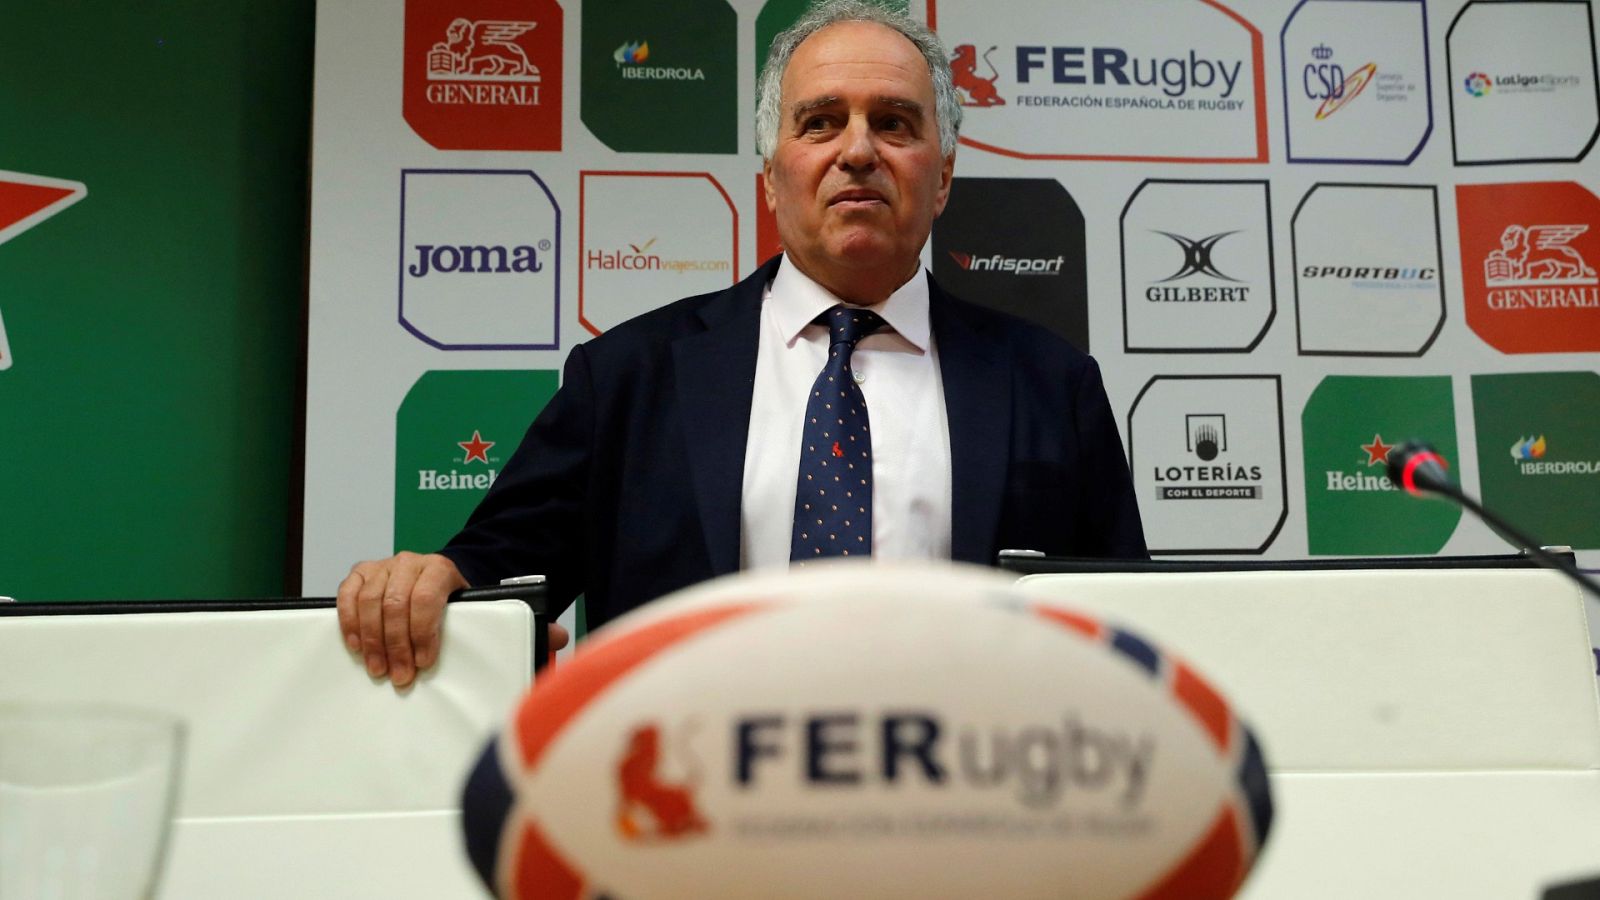 Alfonso Feijoo, reelegido presidente de la federación de rugby